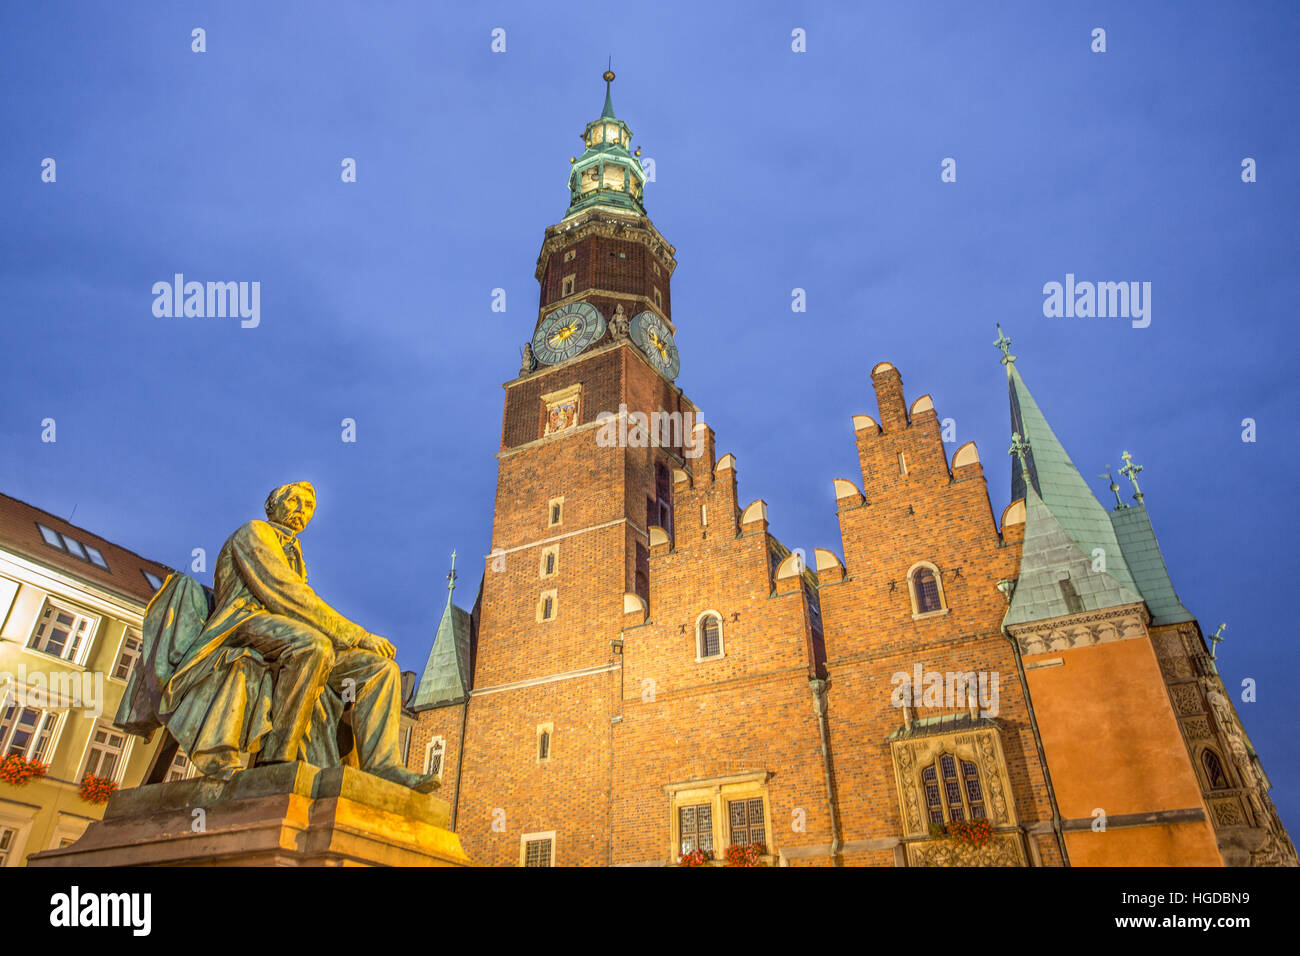 En el Ayuntamiento de la ciudad de Wroclaw por noche Foto de stock